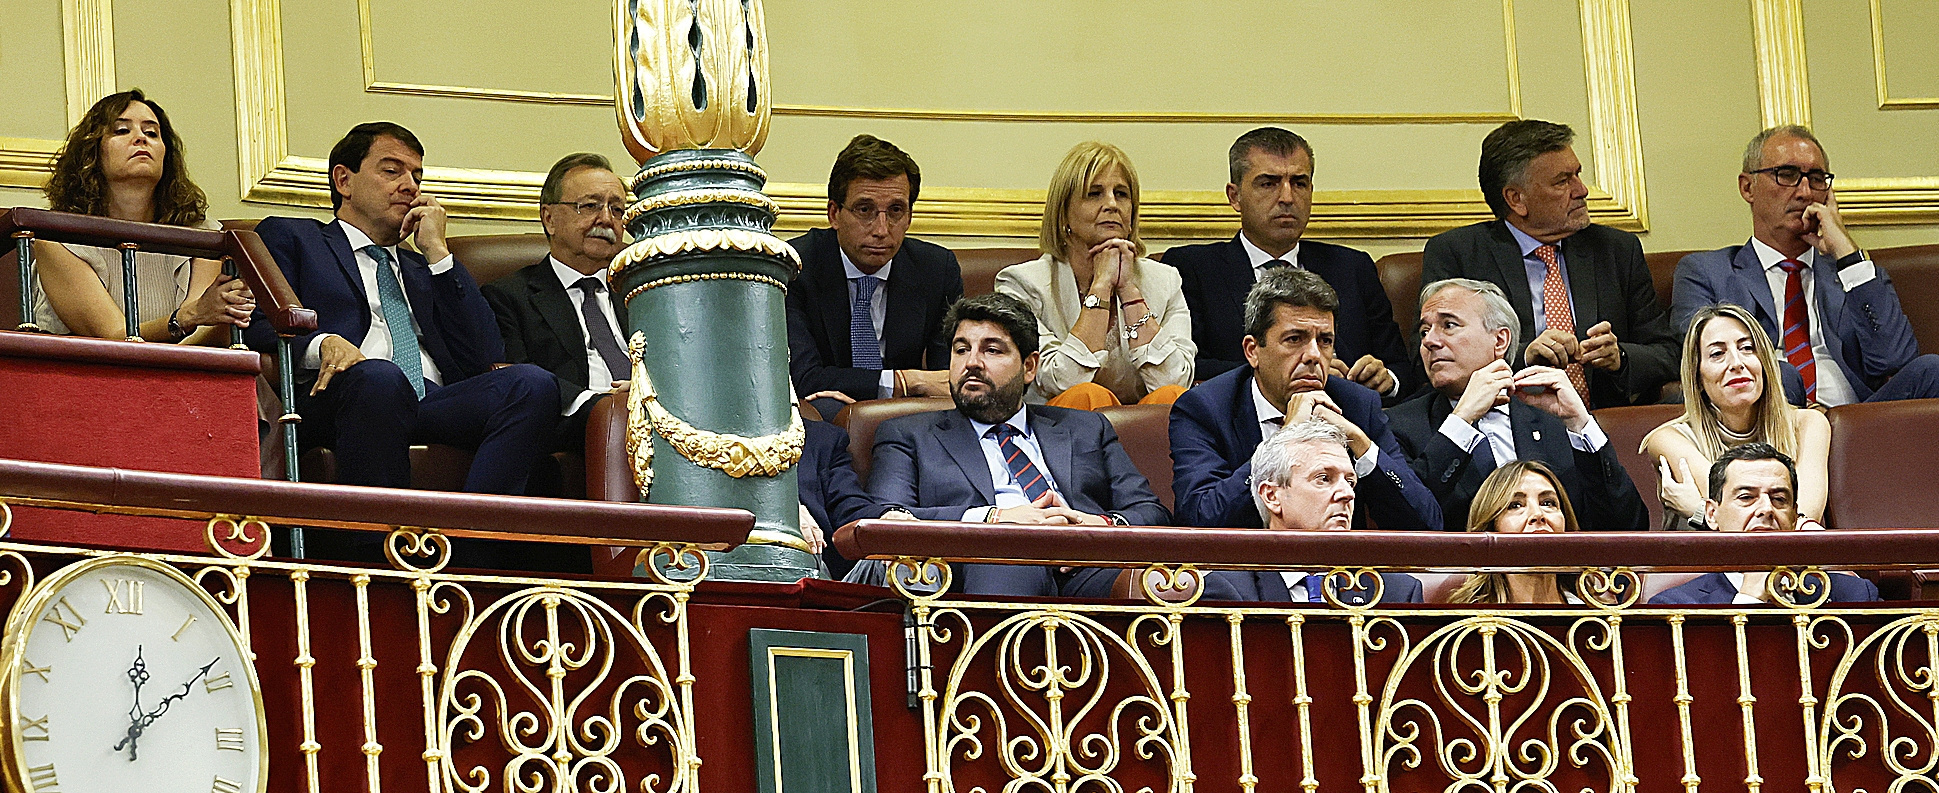 Dirigentes autonómicos del PP, en la tribuna de invitados del Congreso.